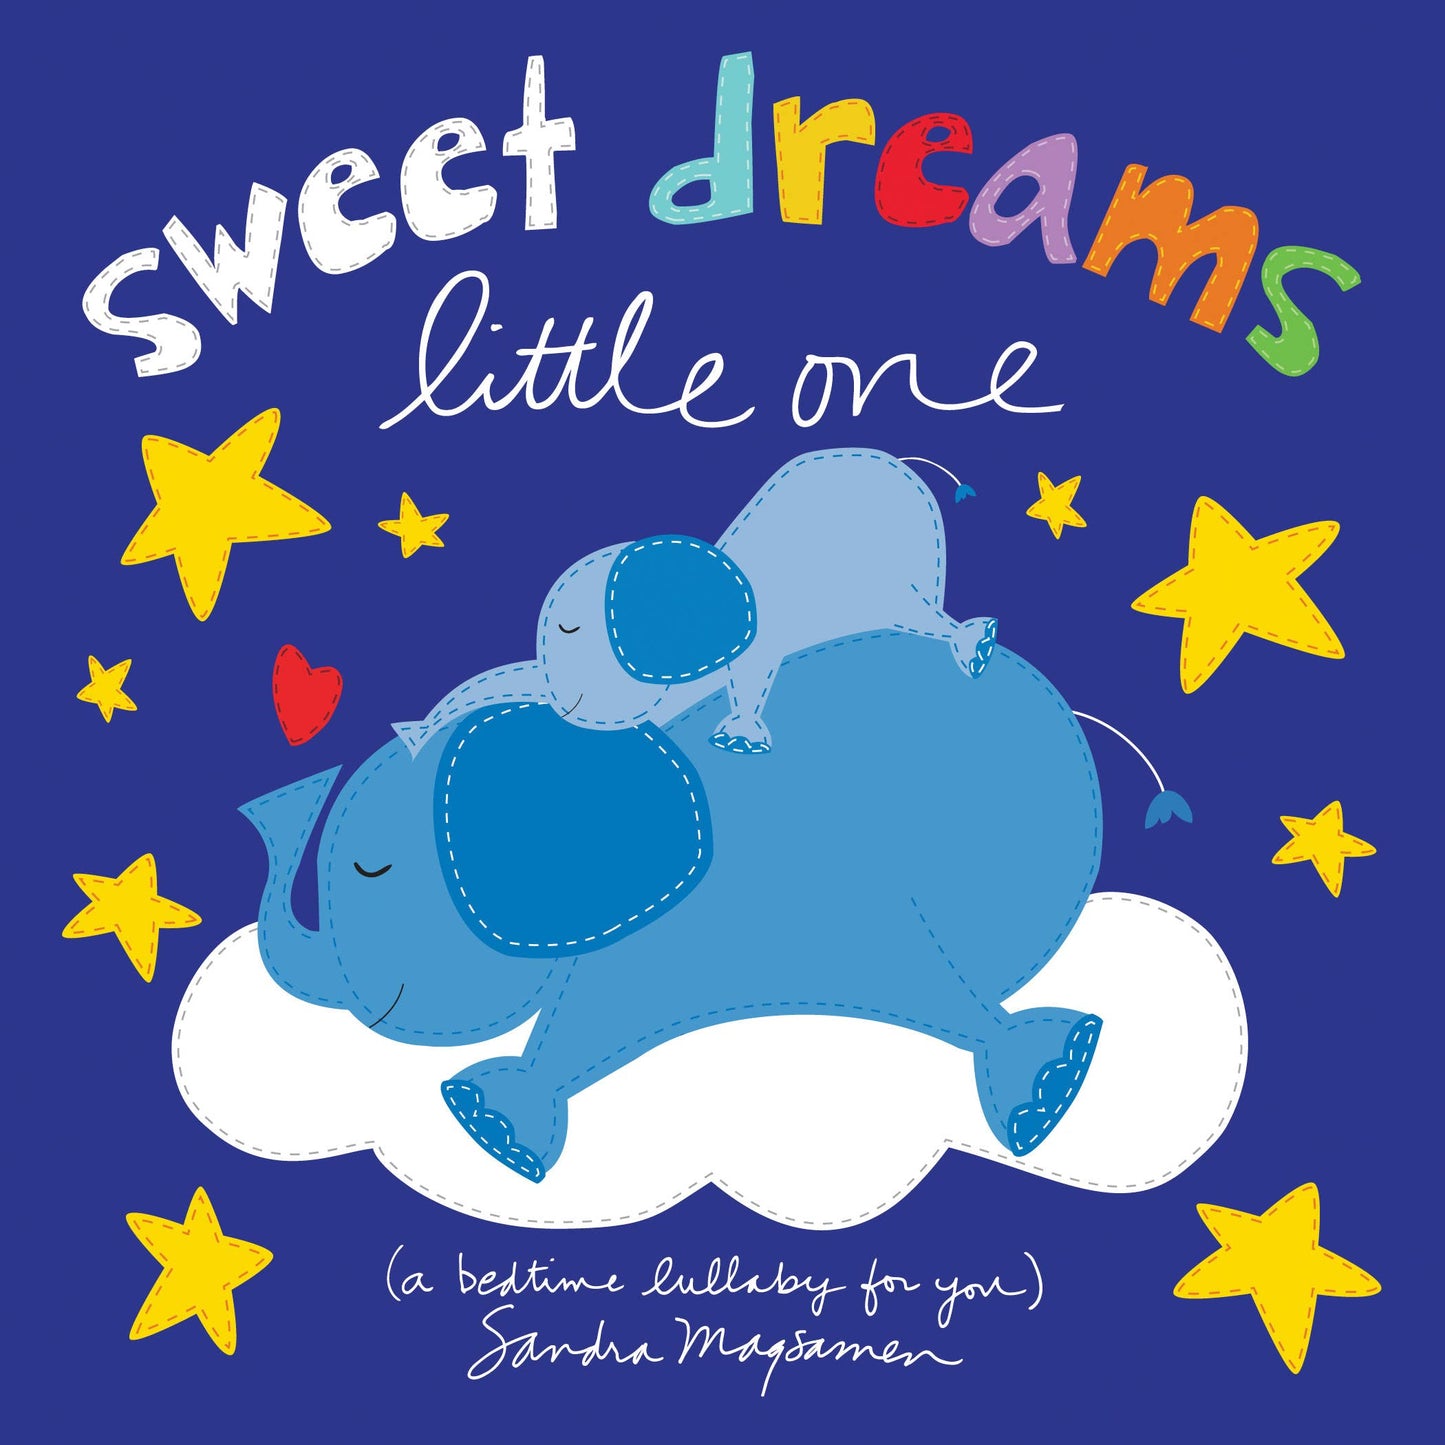 Sweet Dreams Little One